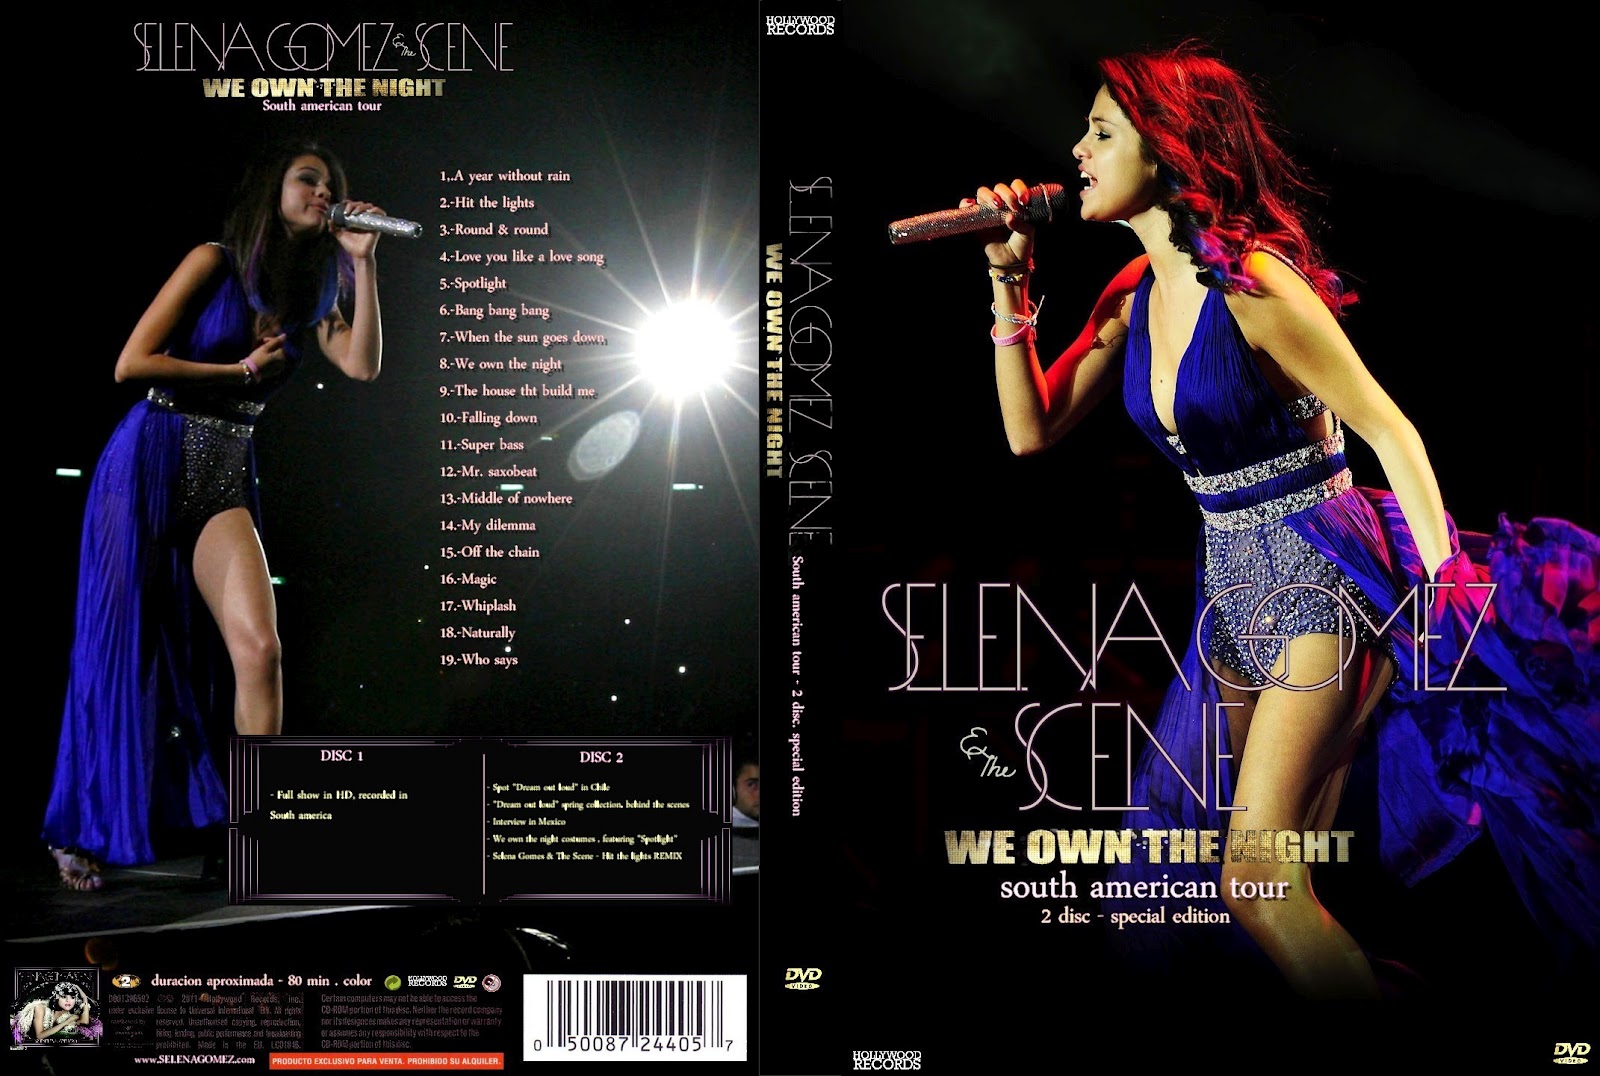 selena gomez tour dvd